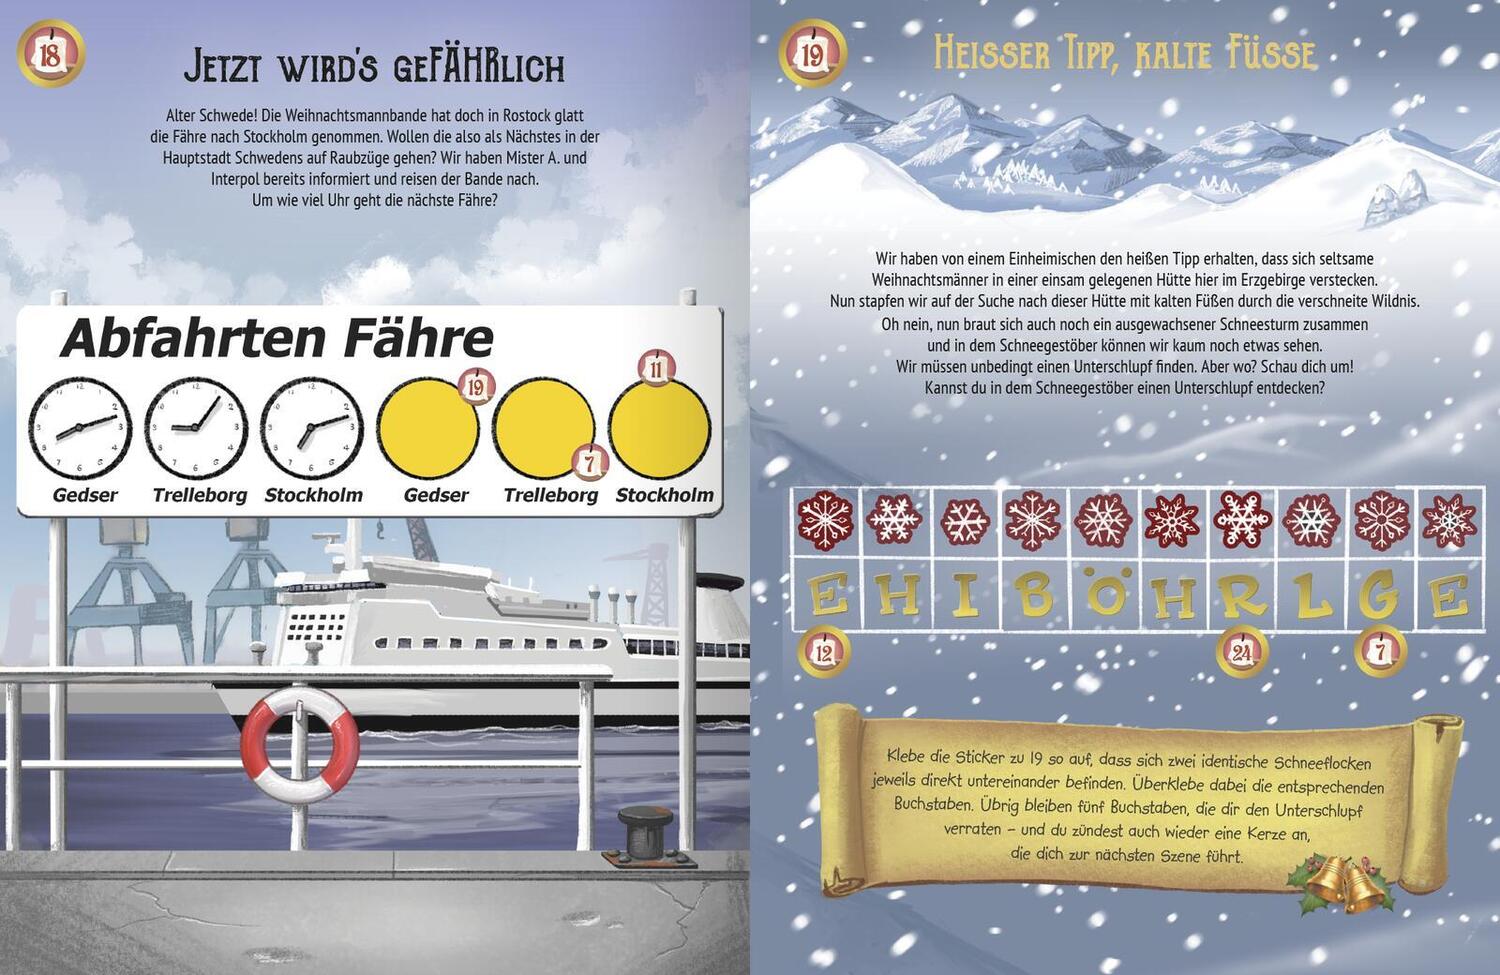 Bild: 9783845854243 | Escape-Stickerbuch - Adventskalender - Das Versteck in den Bergen